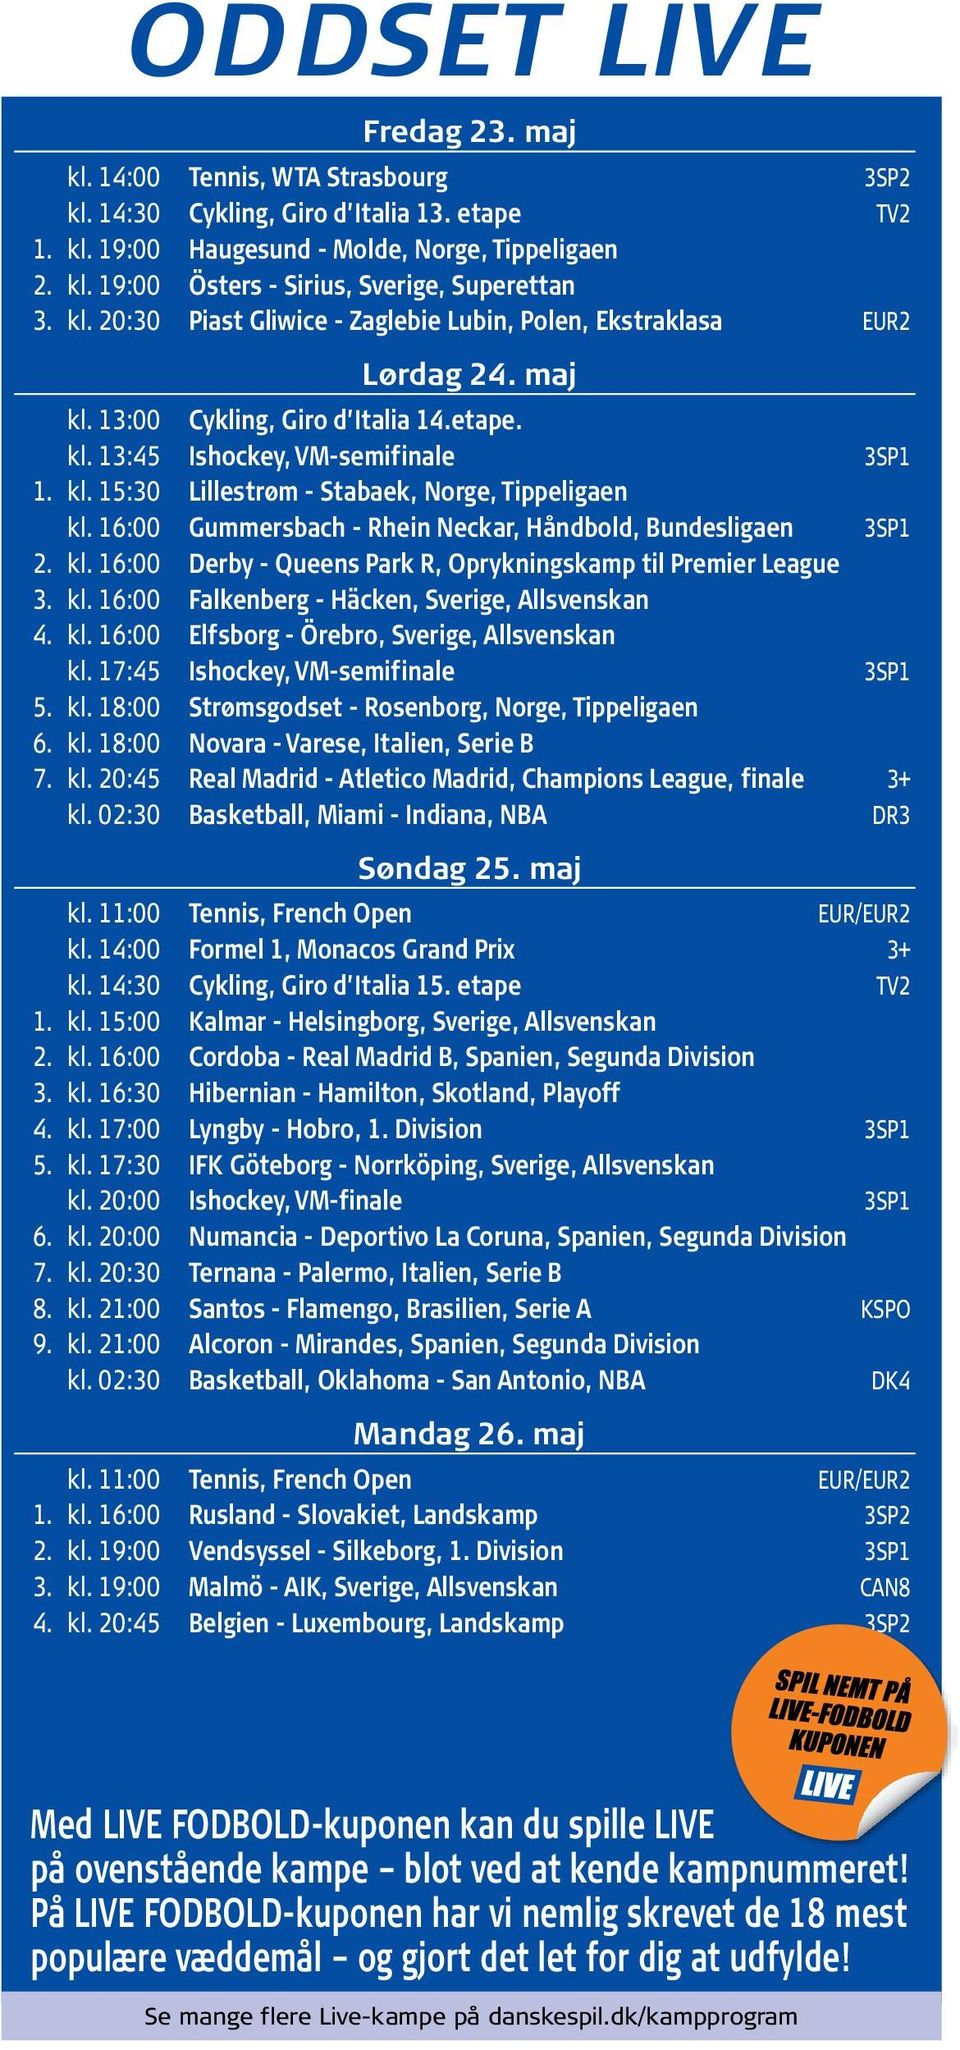 16:00 Gummersbach Rhein Neckar, Håndbold, Bundesligaen 3SP1 2. kl. 16:00 Derby Queens Park R, Oprykningskamp til Premier League 3. kl. 16:00 Falkenberg Häcken, Sverige, Allsvenskan 4. kl. 16:00 Elfsborg Örebro, Sverige, Allsvenskan kl.